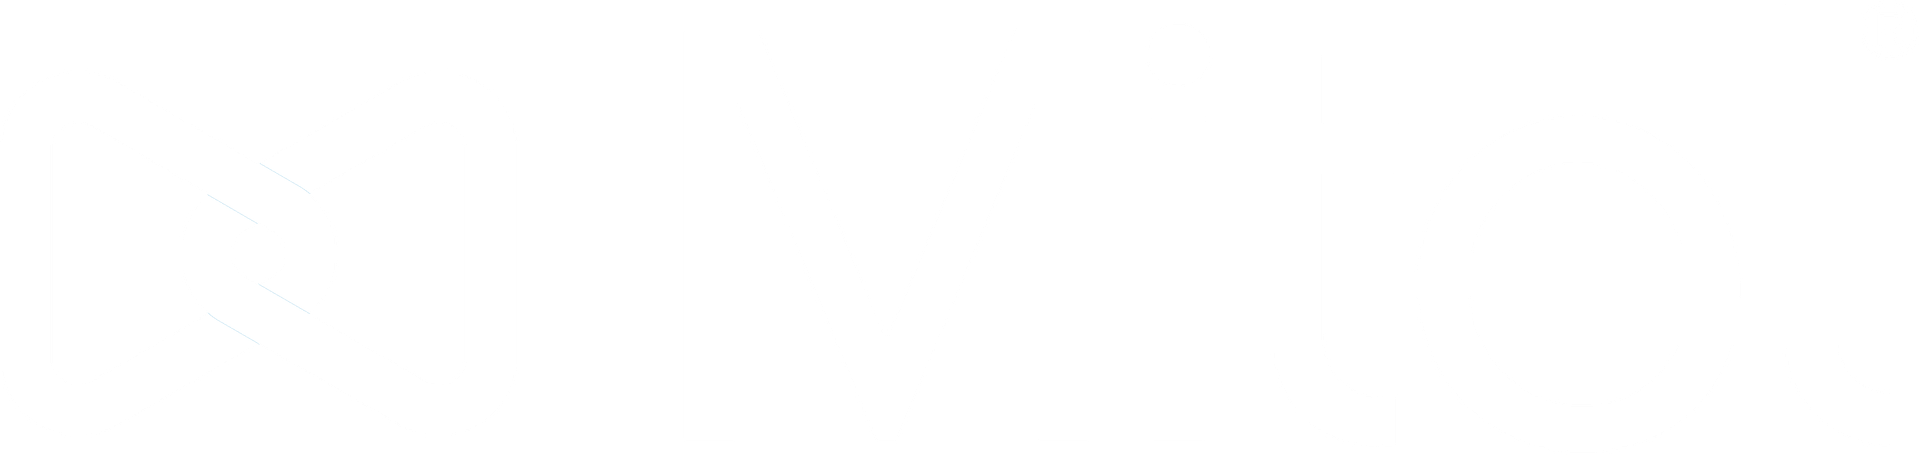 Logo mitel de couleur blanche